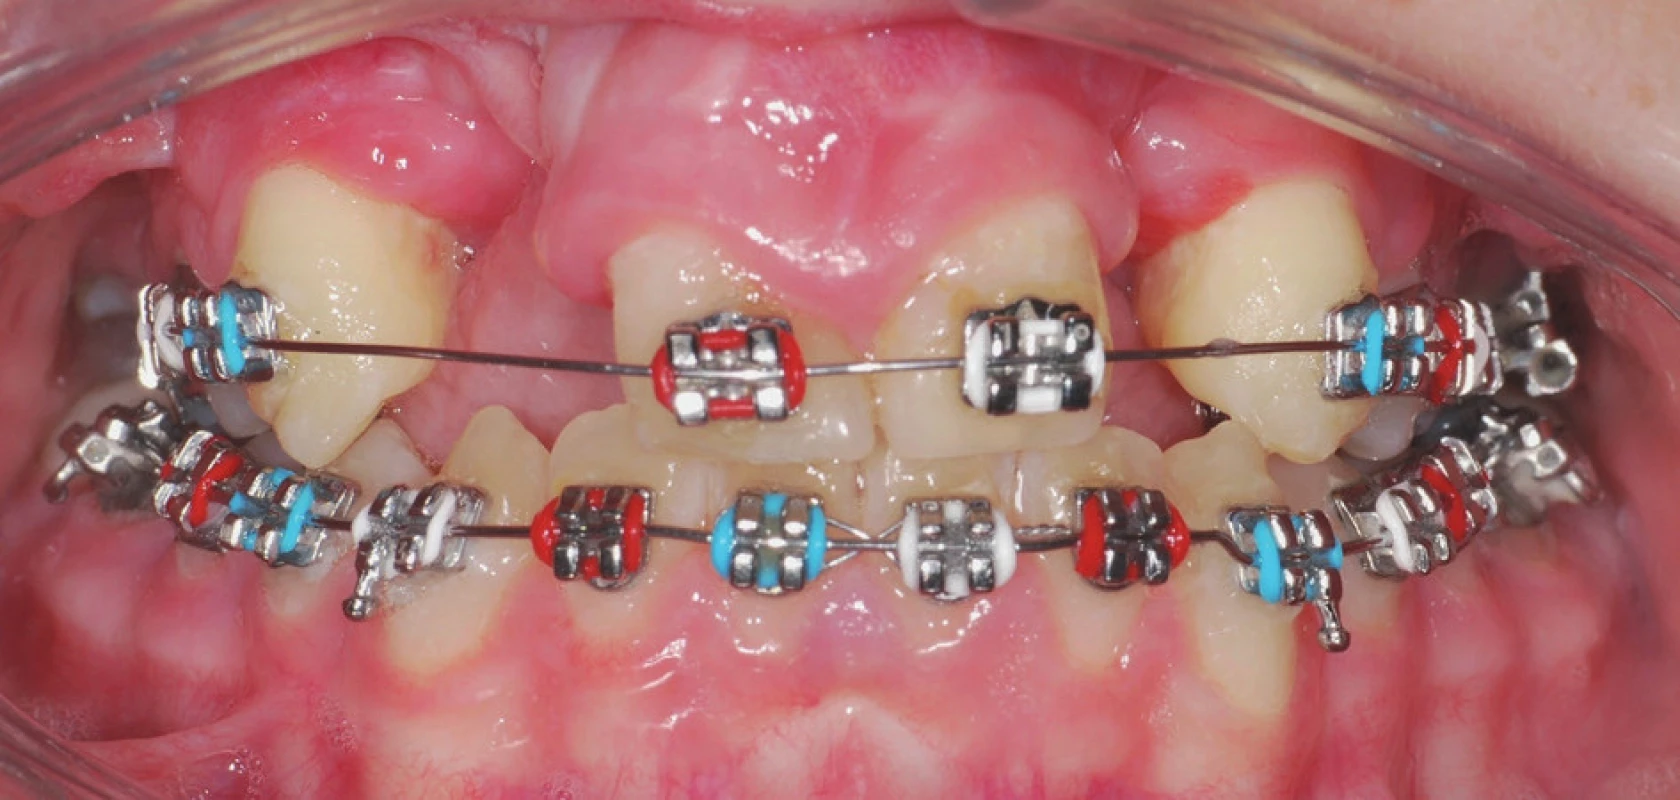 Pacientka s oboustranným celkovým rozštěpem a chybějícími zuby 12 a 22 s nasazeným fixním aparátem na horní a dolní čelisti. Ortodontickou léčbou bylo dosaženo správného postavení jednotlivých zubů horní čelisti a vyhovujícího vztahu zubních oblouků. Pacientka je připravována na protetickou rehabilitaci chrupu fixním můstkem.